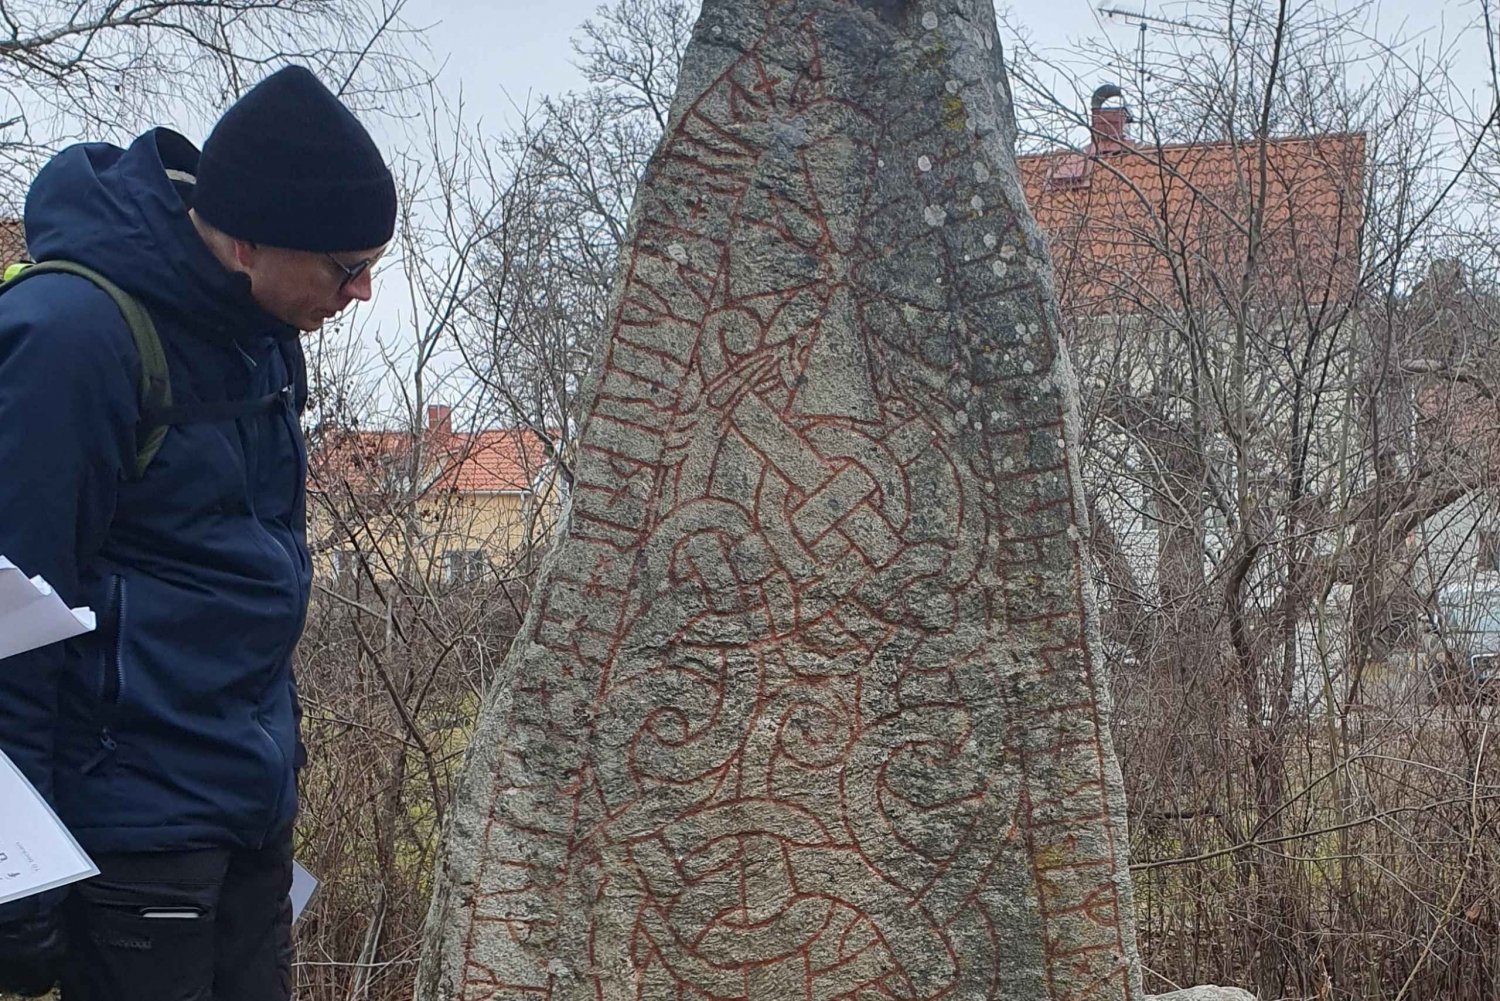 Estocolmo: Piedras rúnicas vikingas y campos de tumbas en zona urbana